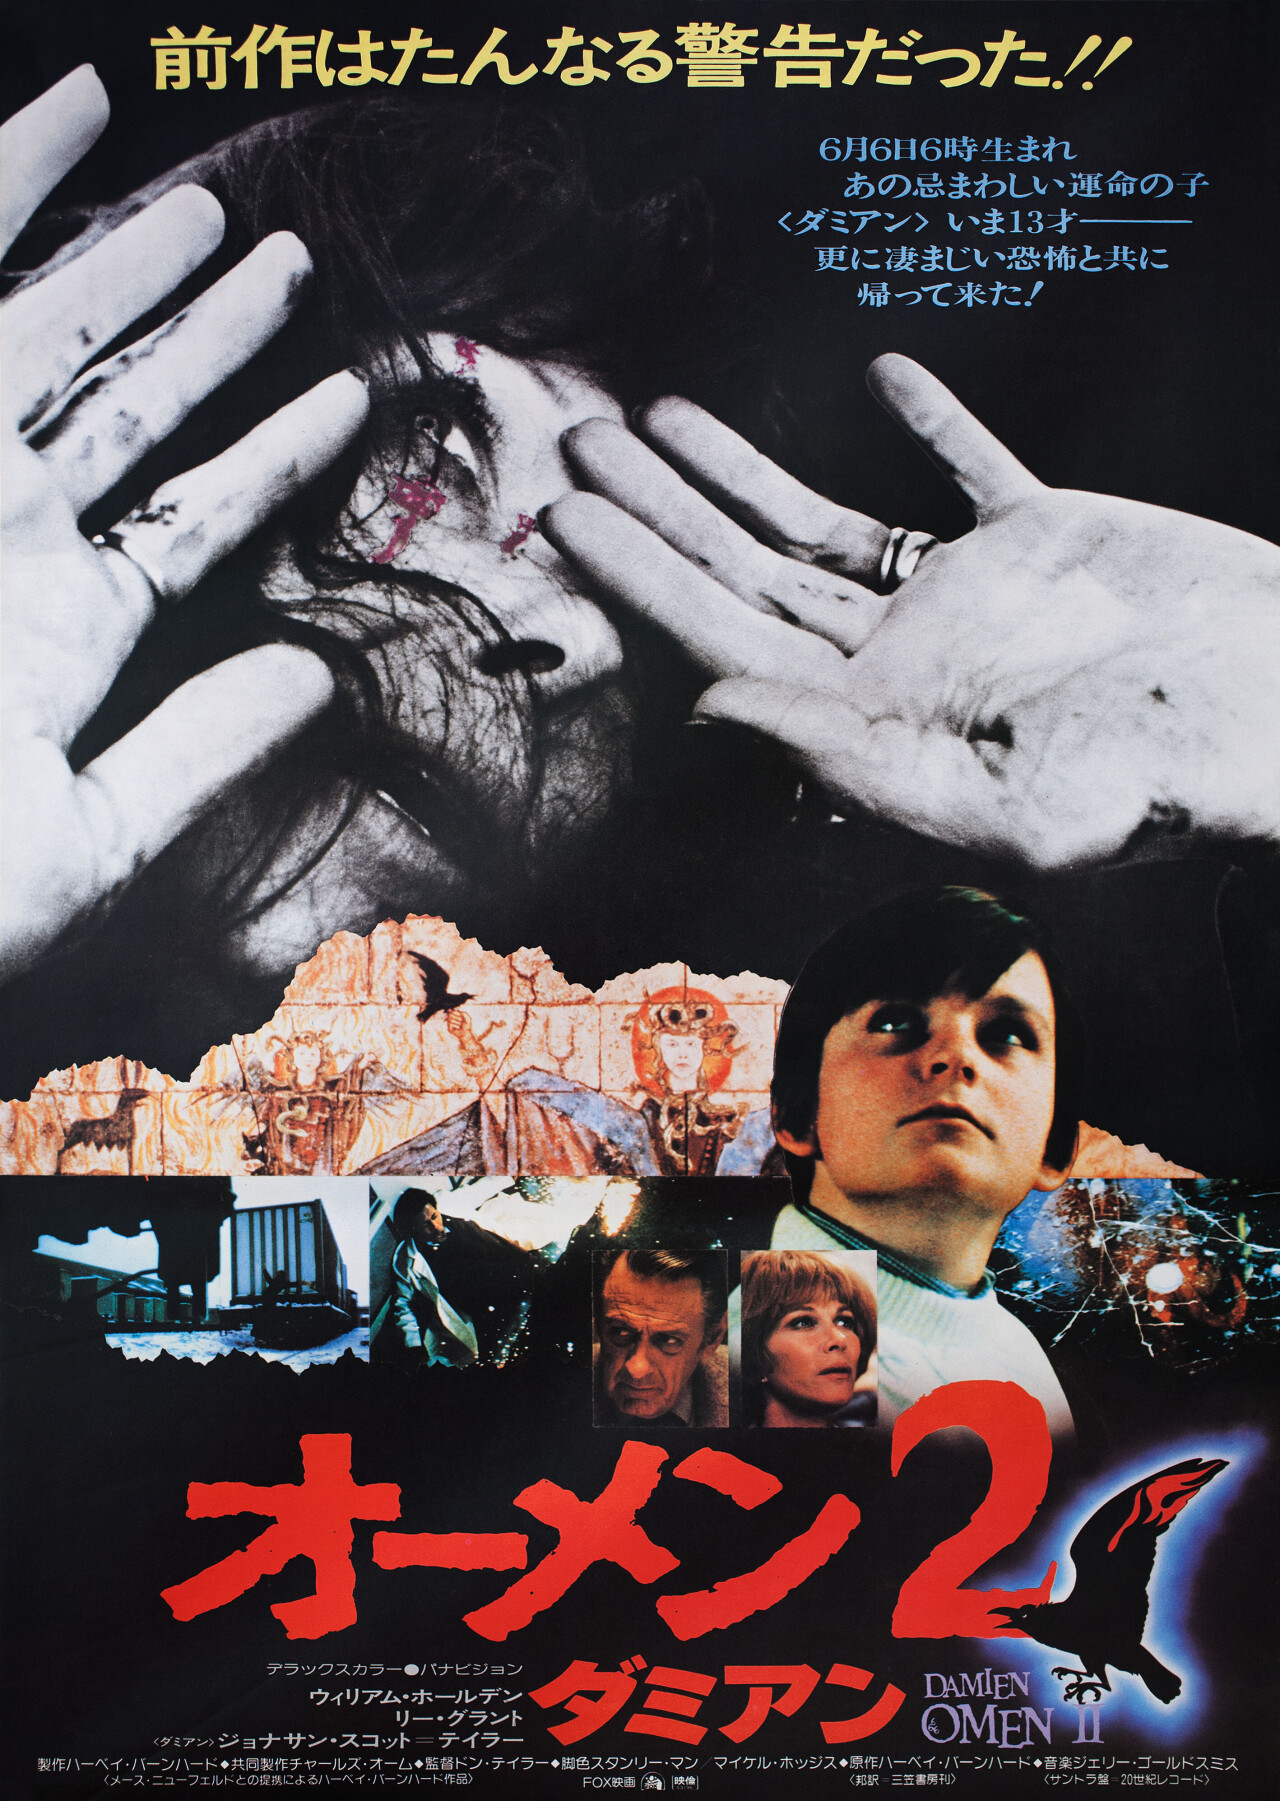 Омен 2: Дэмиен (Damien Omen II, 1978), режиссёр Дон Тейлор, японский постер к фильму (ужасы, 1978 год)